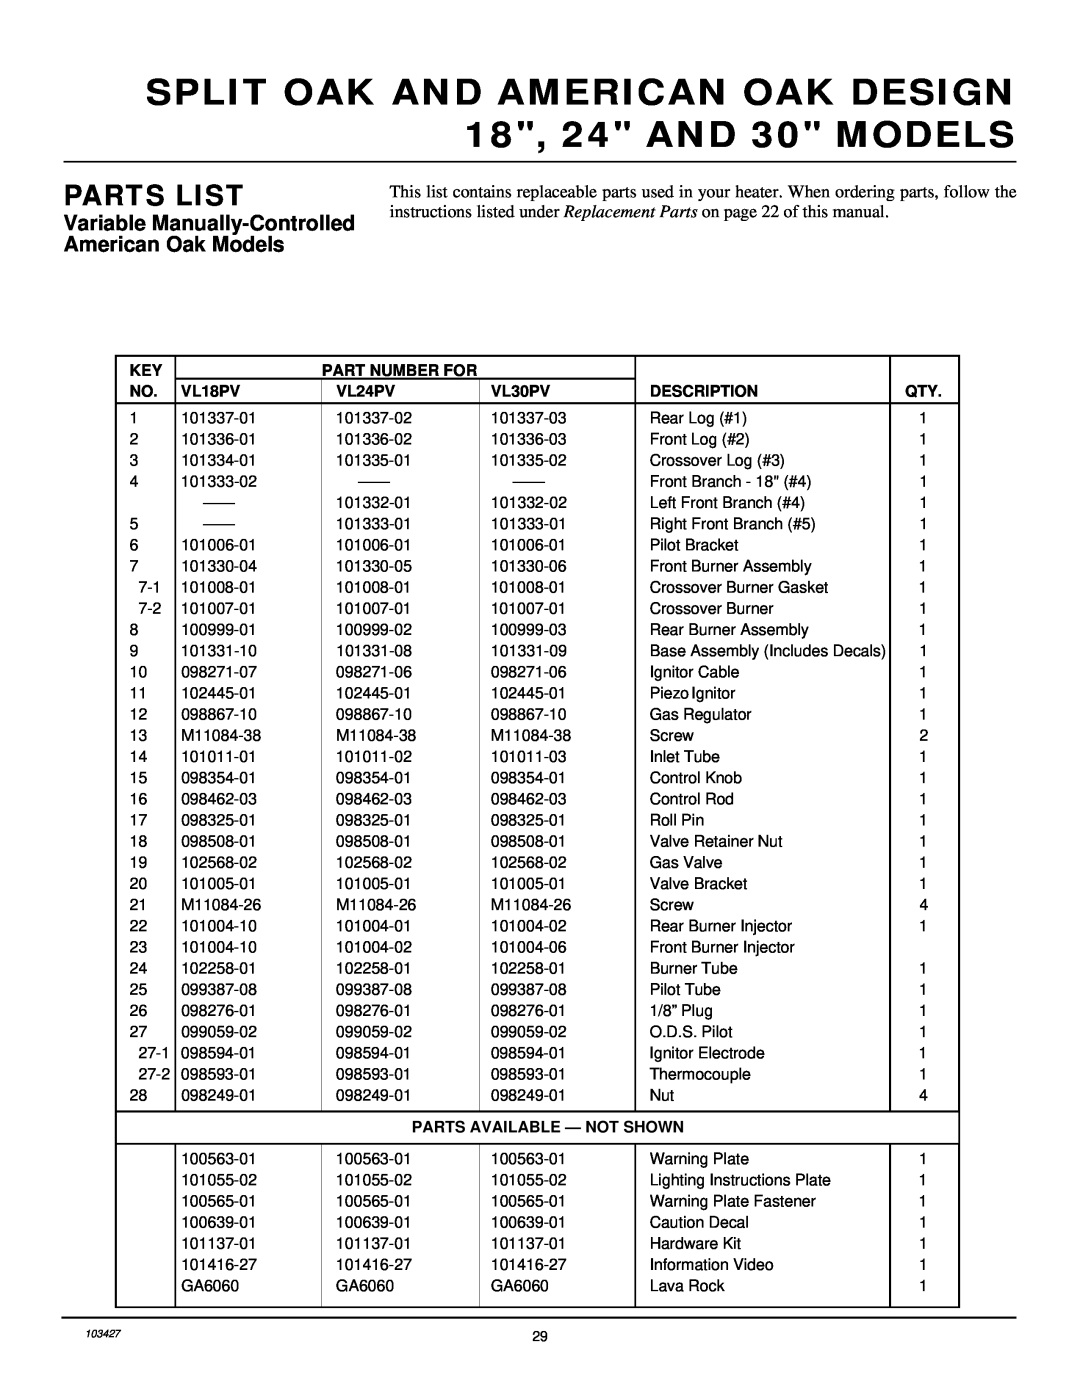 Desa Unvented Propane Gas Log Heater Model Split Oak and American Oak Design Parts List, Part Number For, VL18PV, VL24PV 